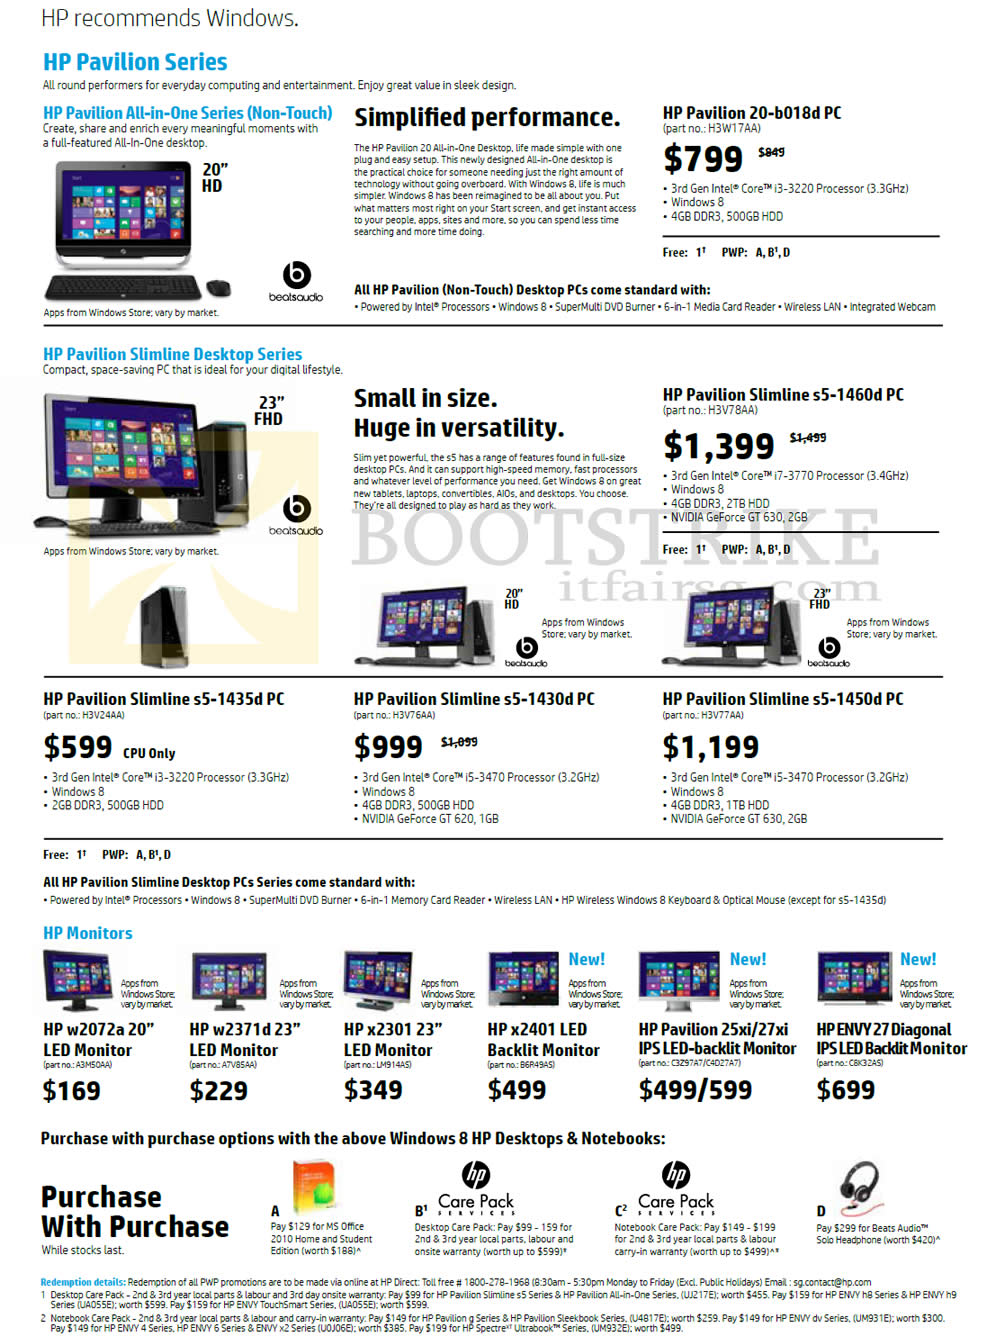 IT SHOW 2013 price list image brochure of HP Desktop PCs, AIO Desktop PCs, LED Monitors, Pavilion 20-b018d, Slimline S5-1460d, 1435d, 1430d, 1450d, W2072a, W2371d, X2301, X2401, 25xi, 27xi, 27